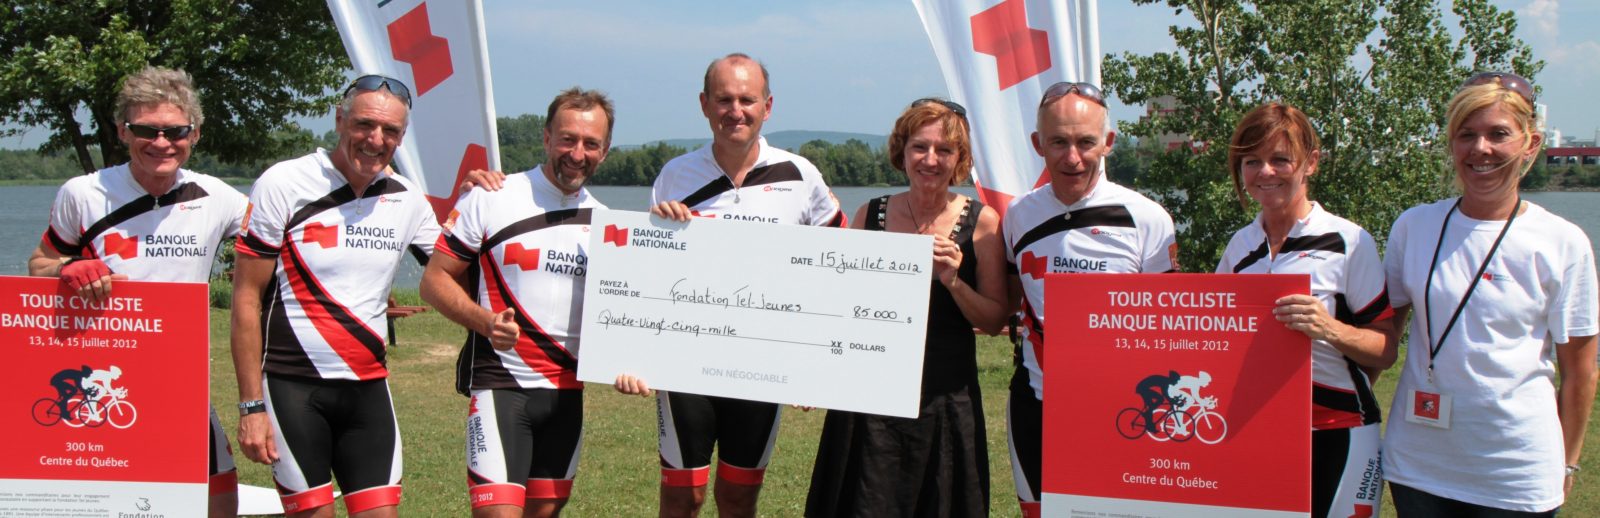 Le Tour cycliste Banque Nationale récolte 85 000 $